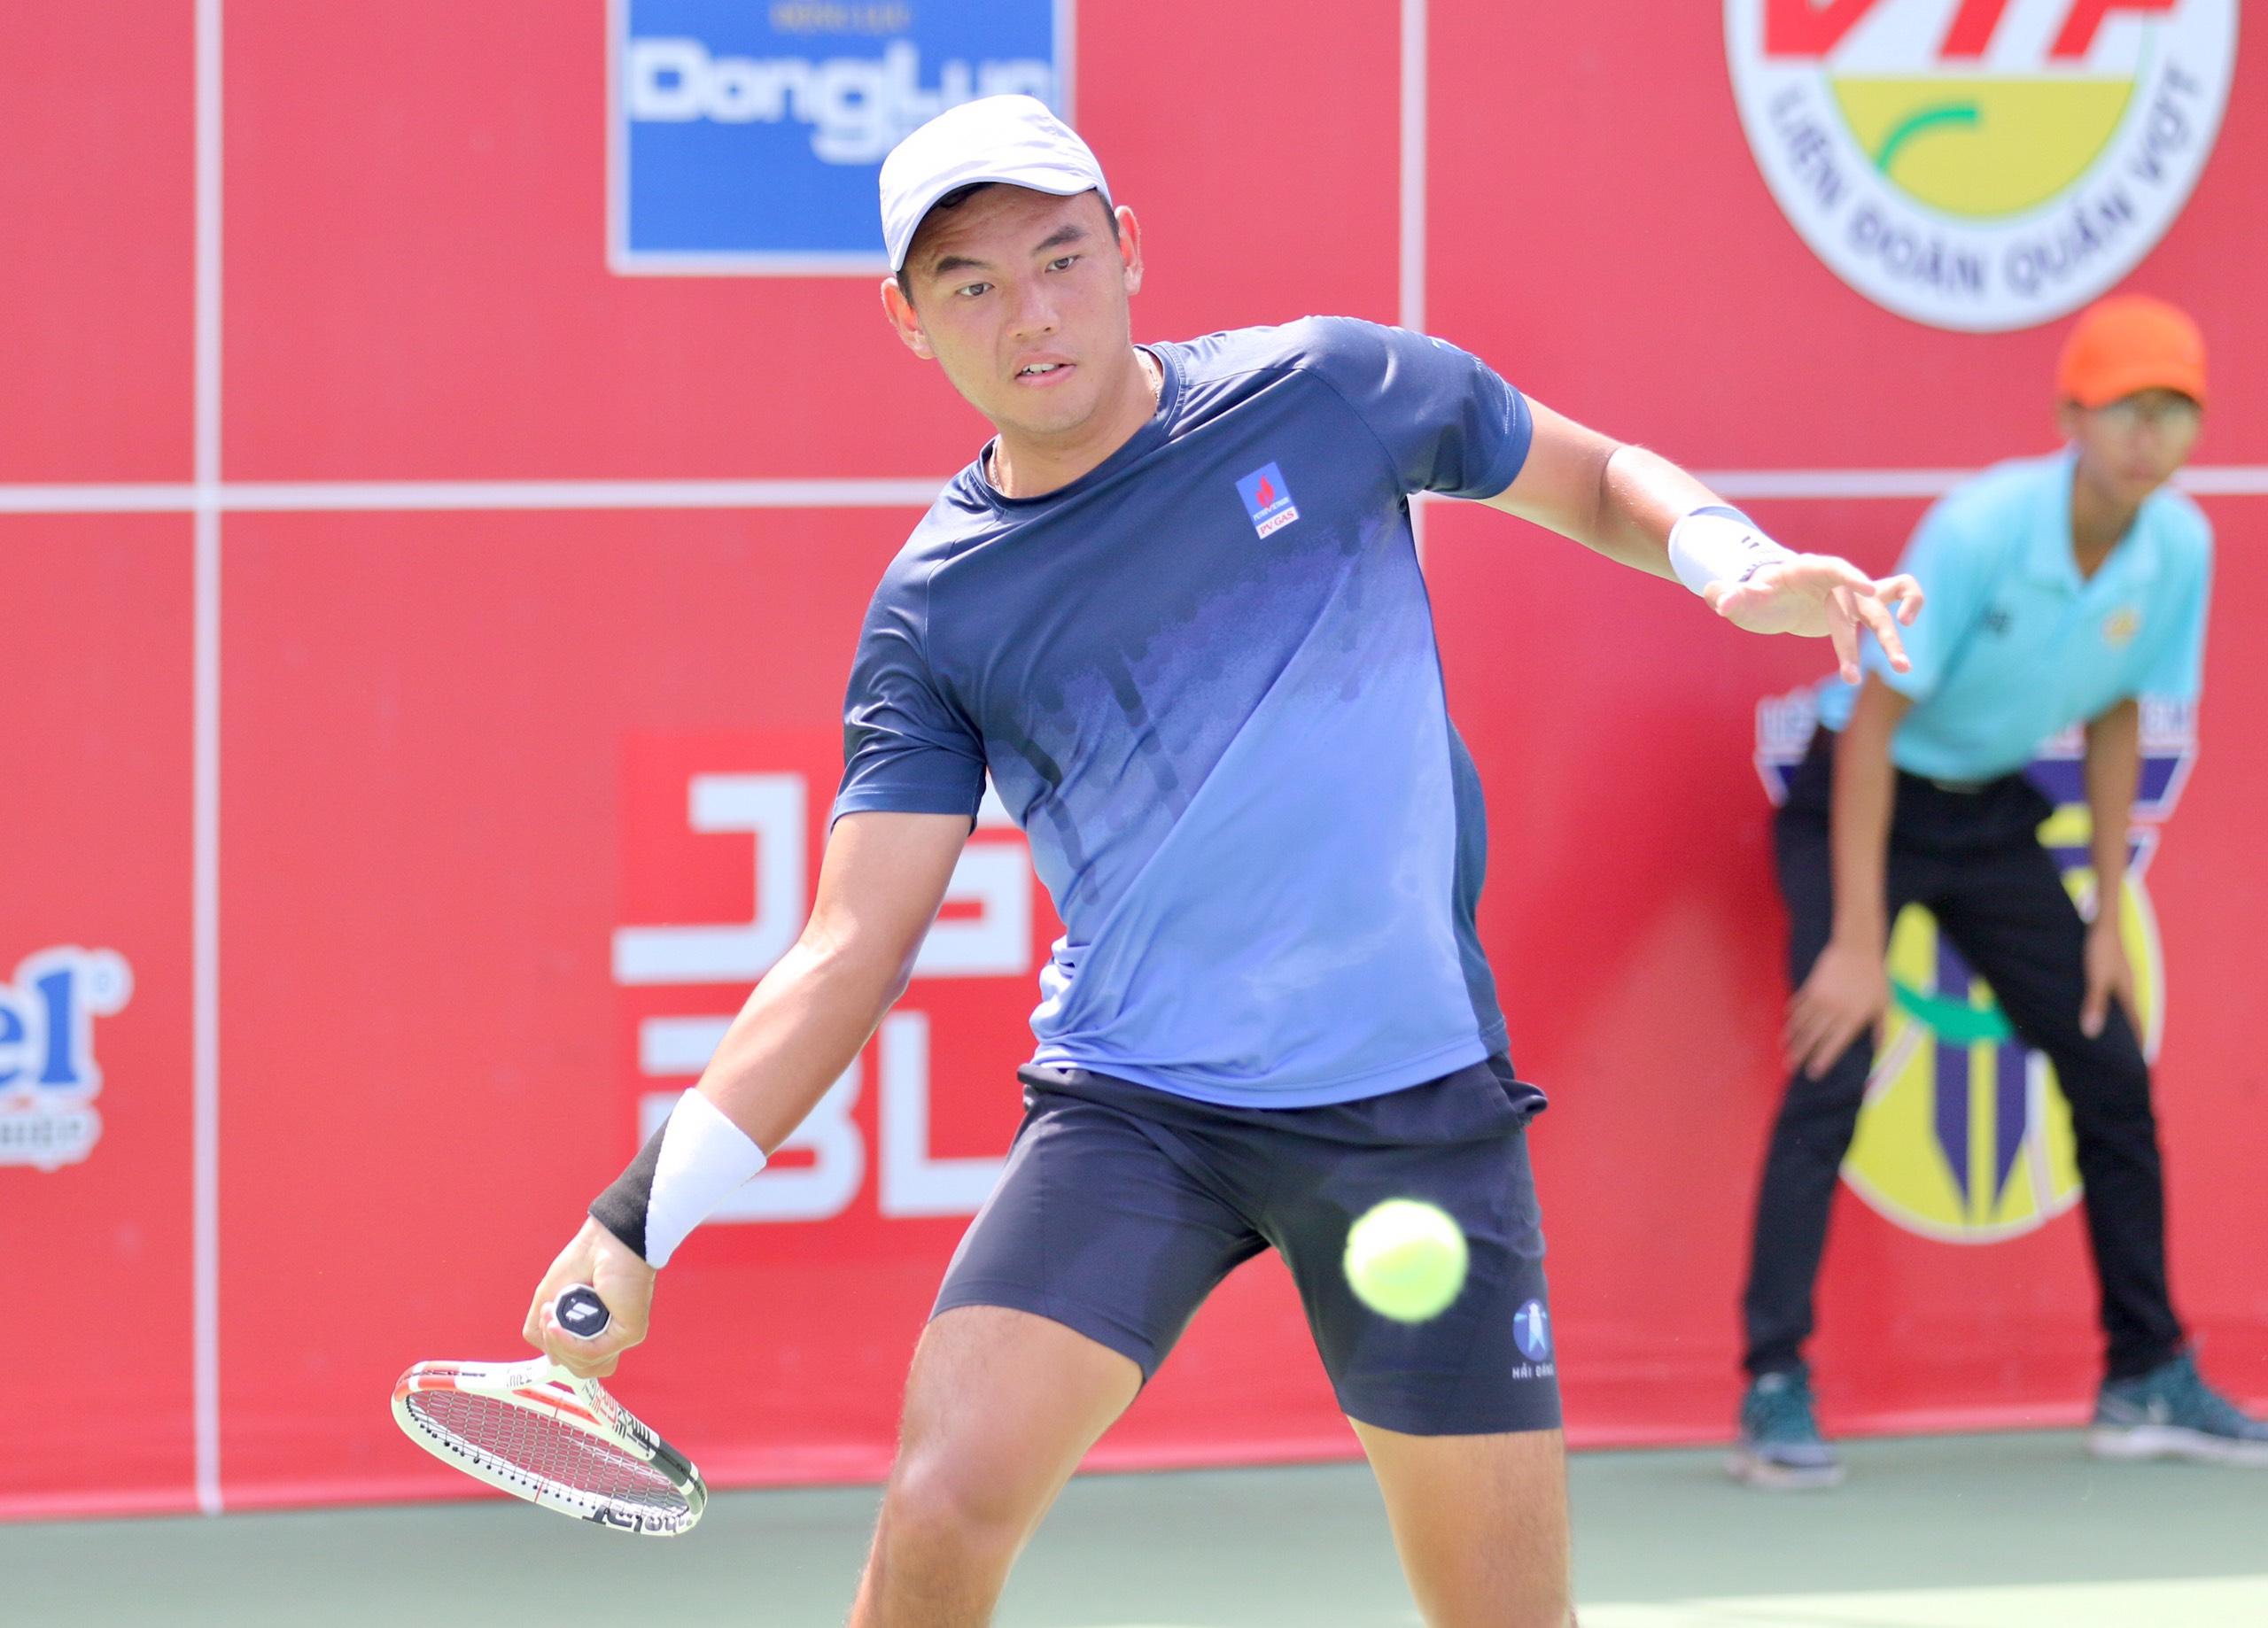 Lý Hoàng Nam được biết đến là tay vợt trẻ hàng đầu Việt Nam hiện nay